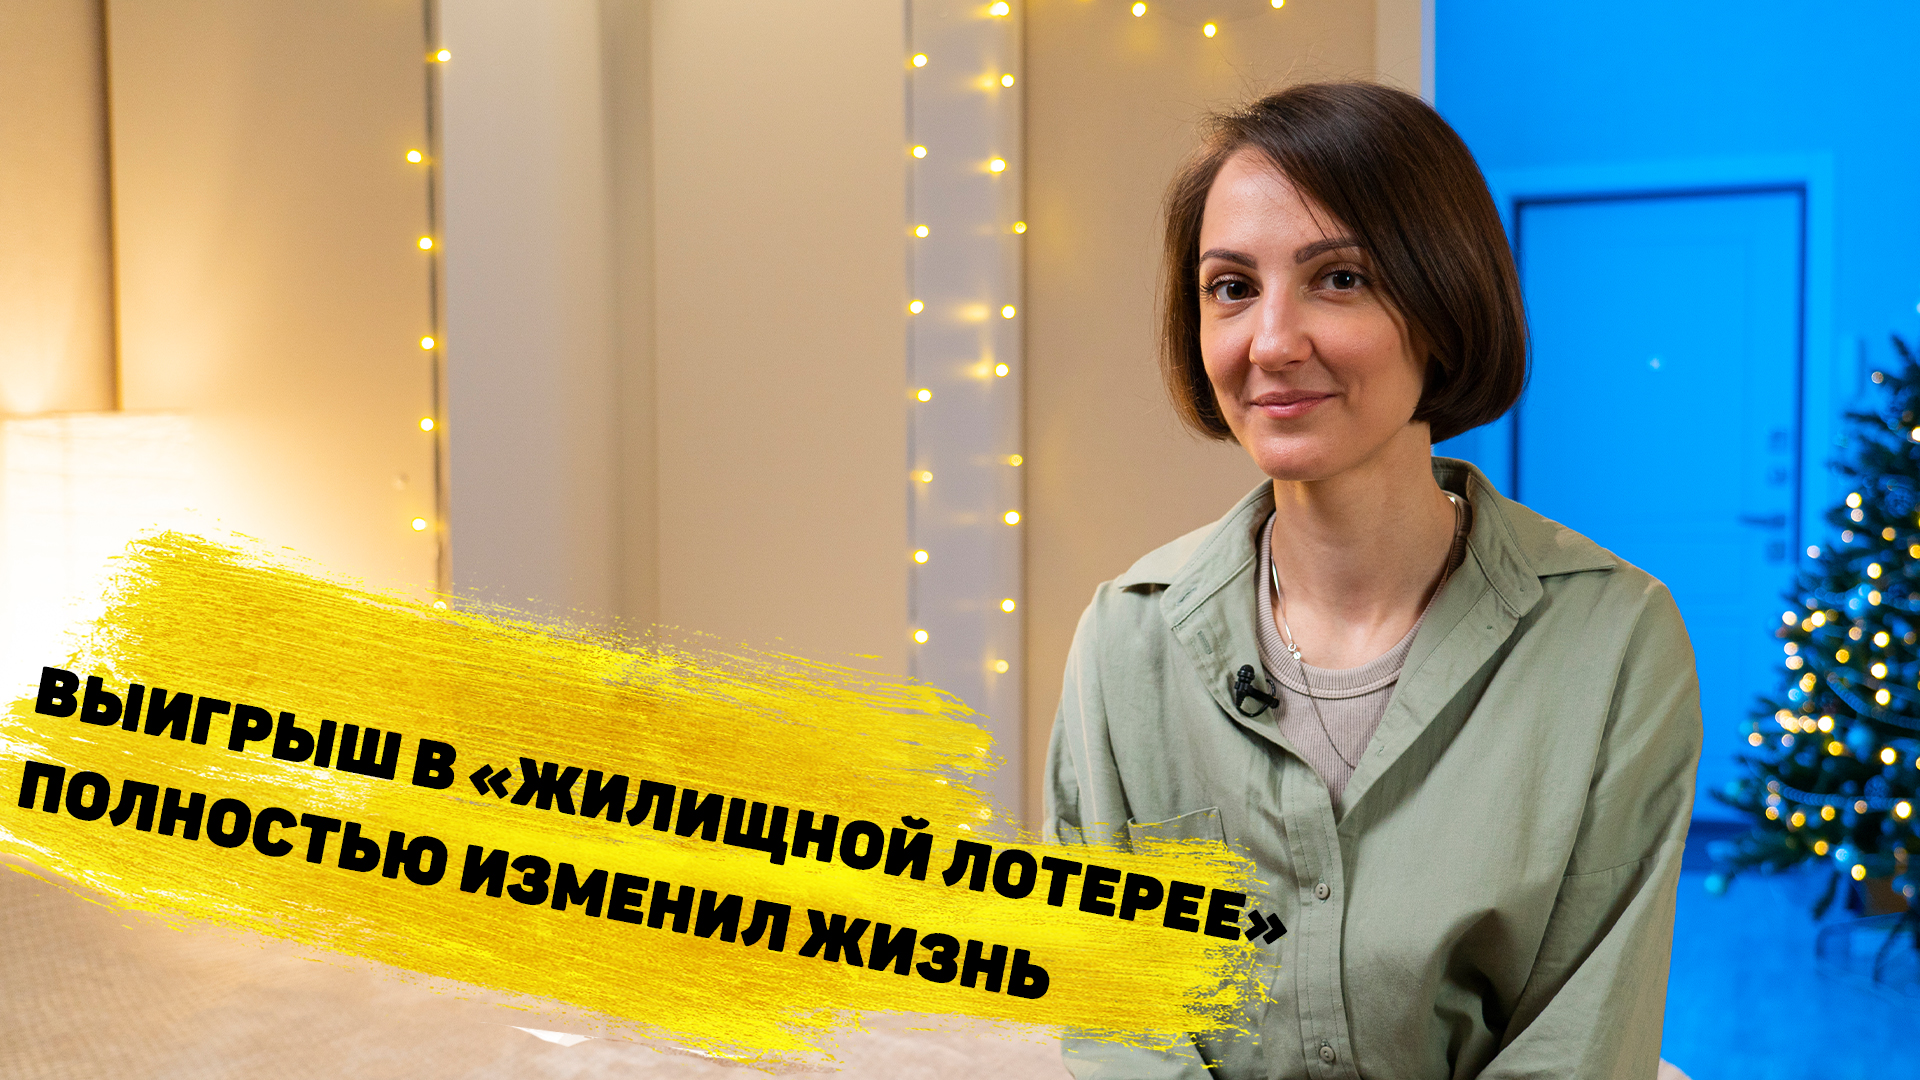 Елена Гарнаженко выиграла 10 000 000 ₽ на квартиру в «Жилищной лотерее»